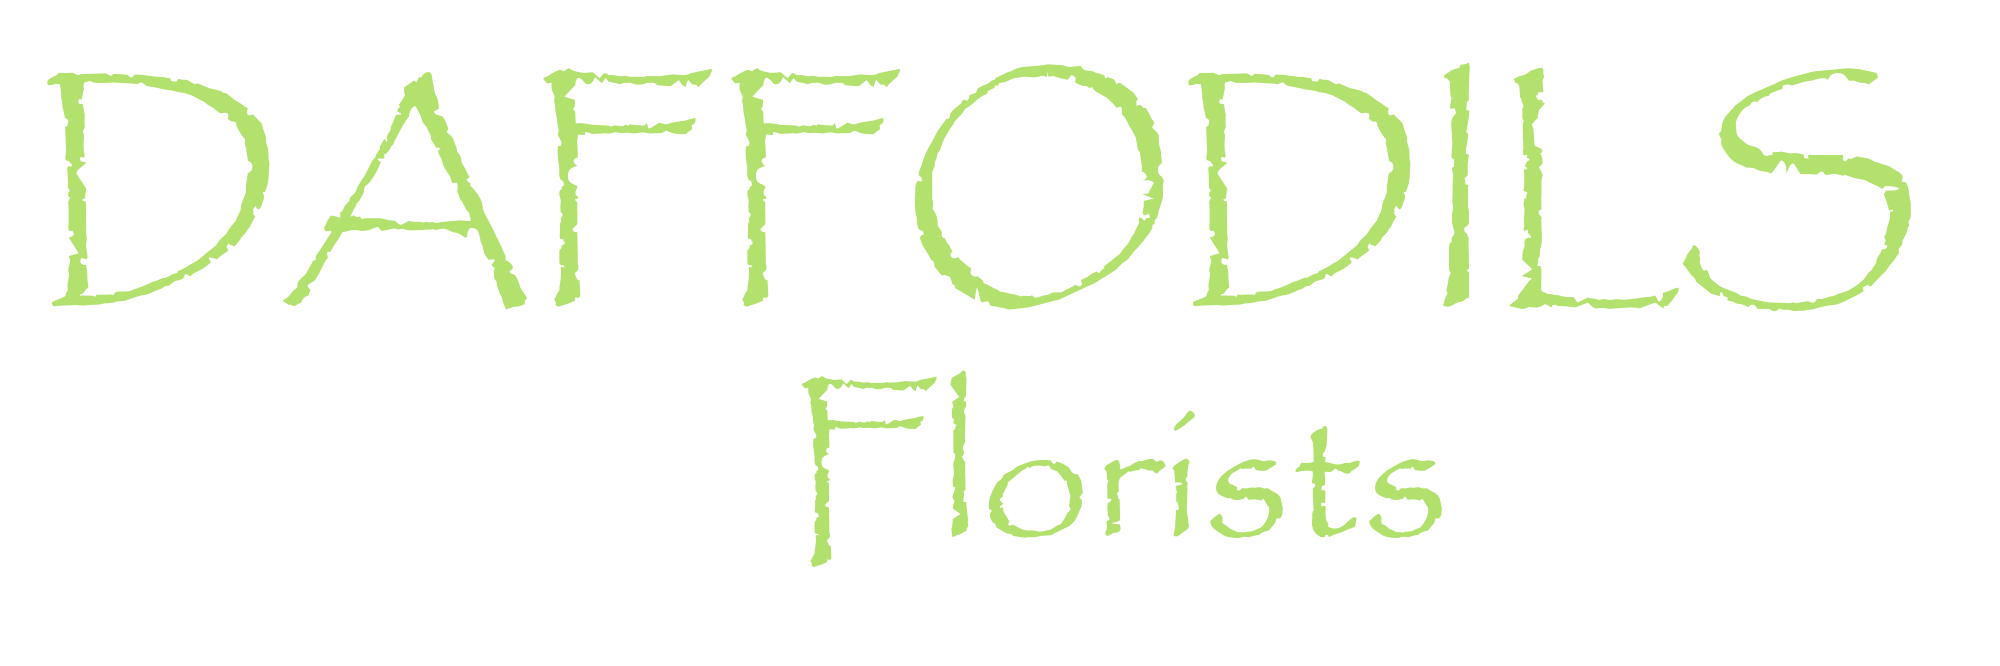 Daffodils Logo